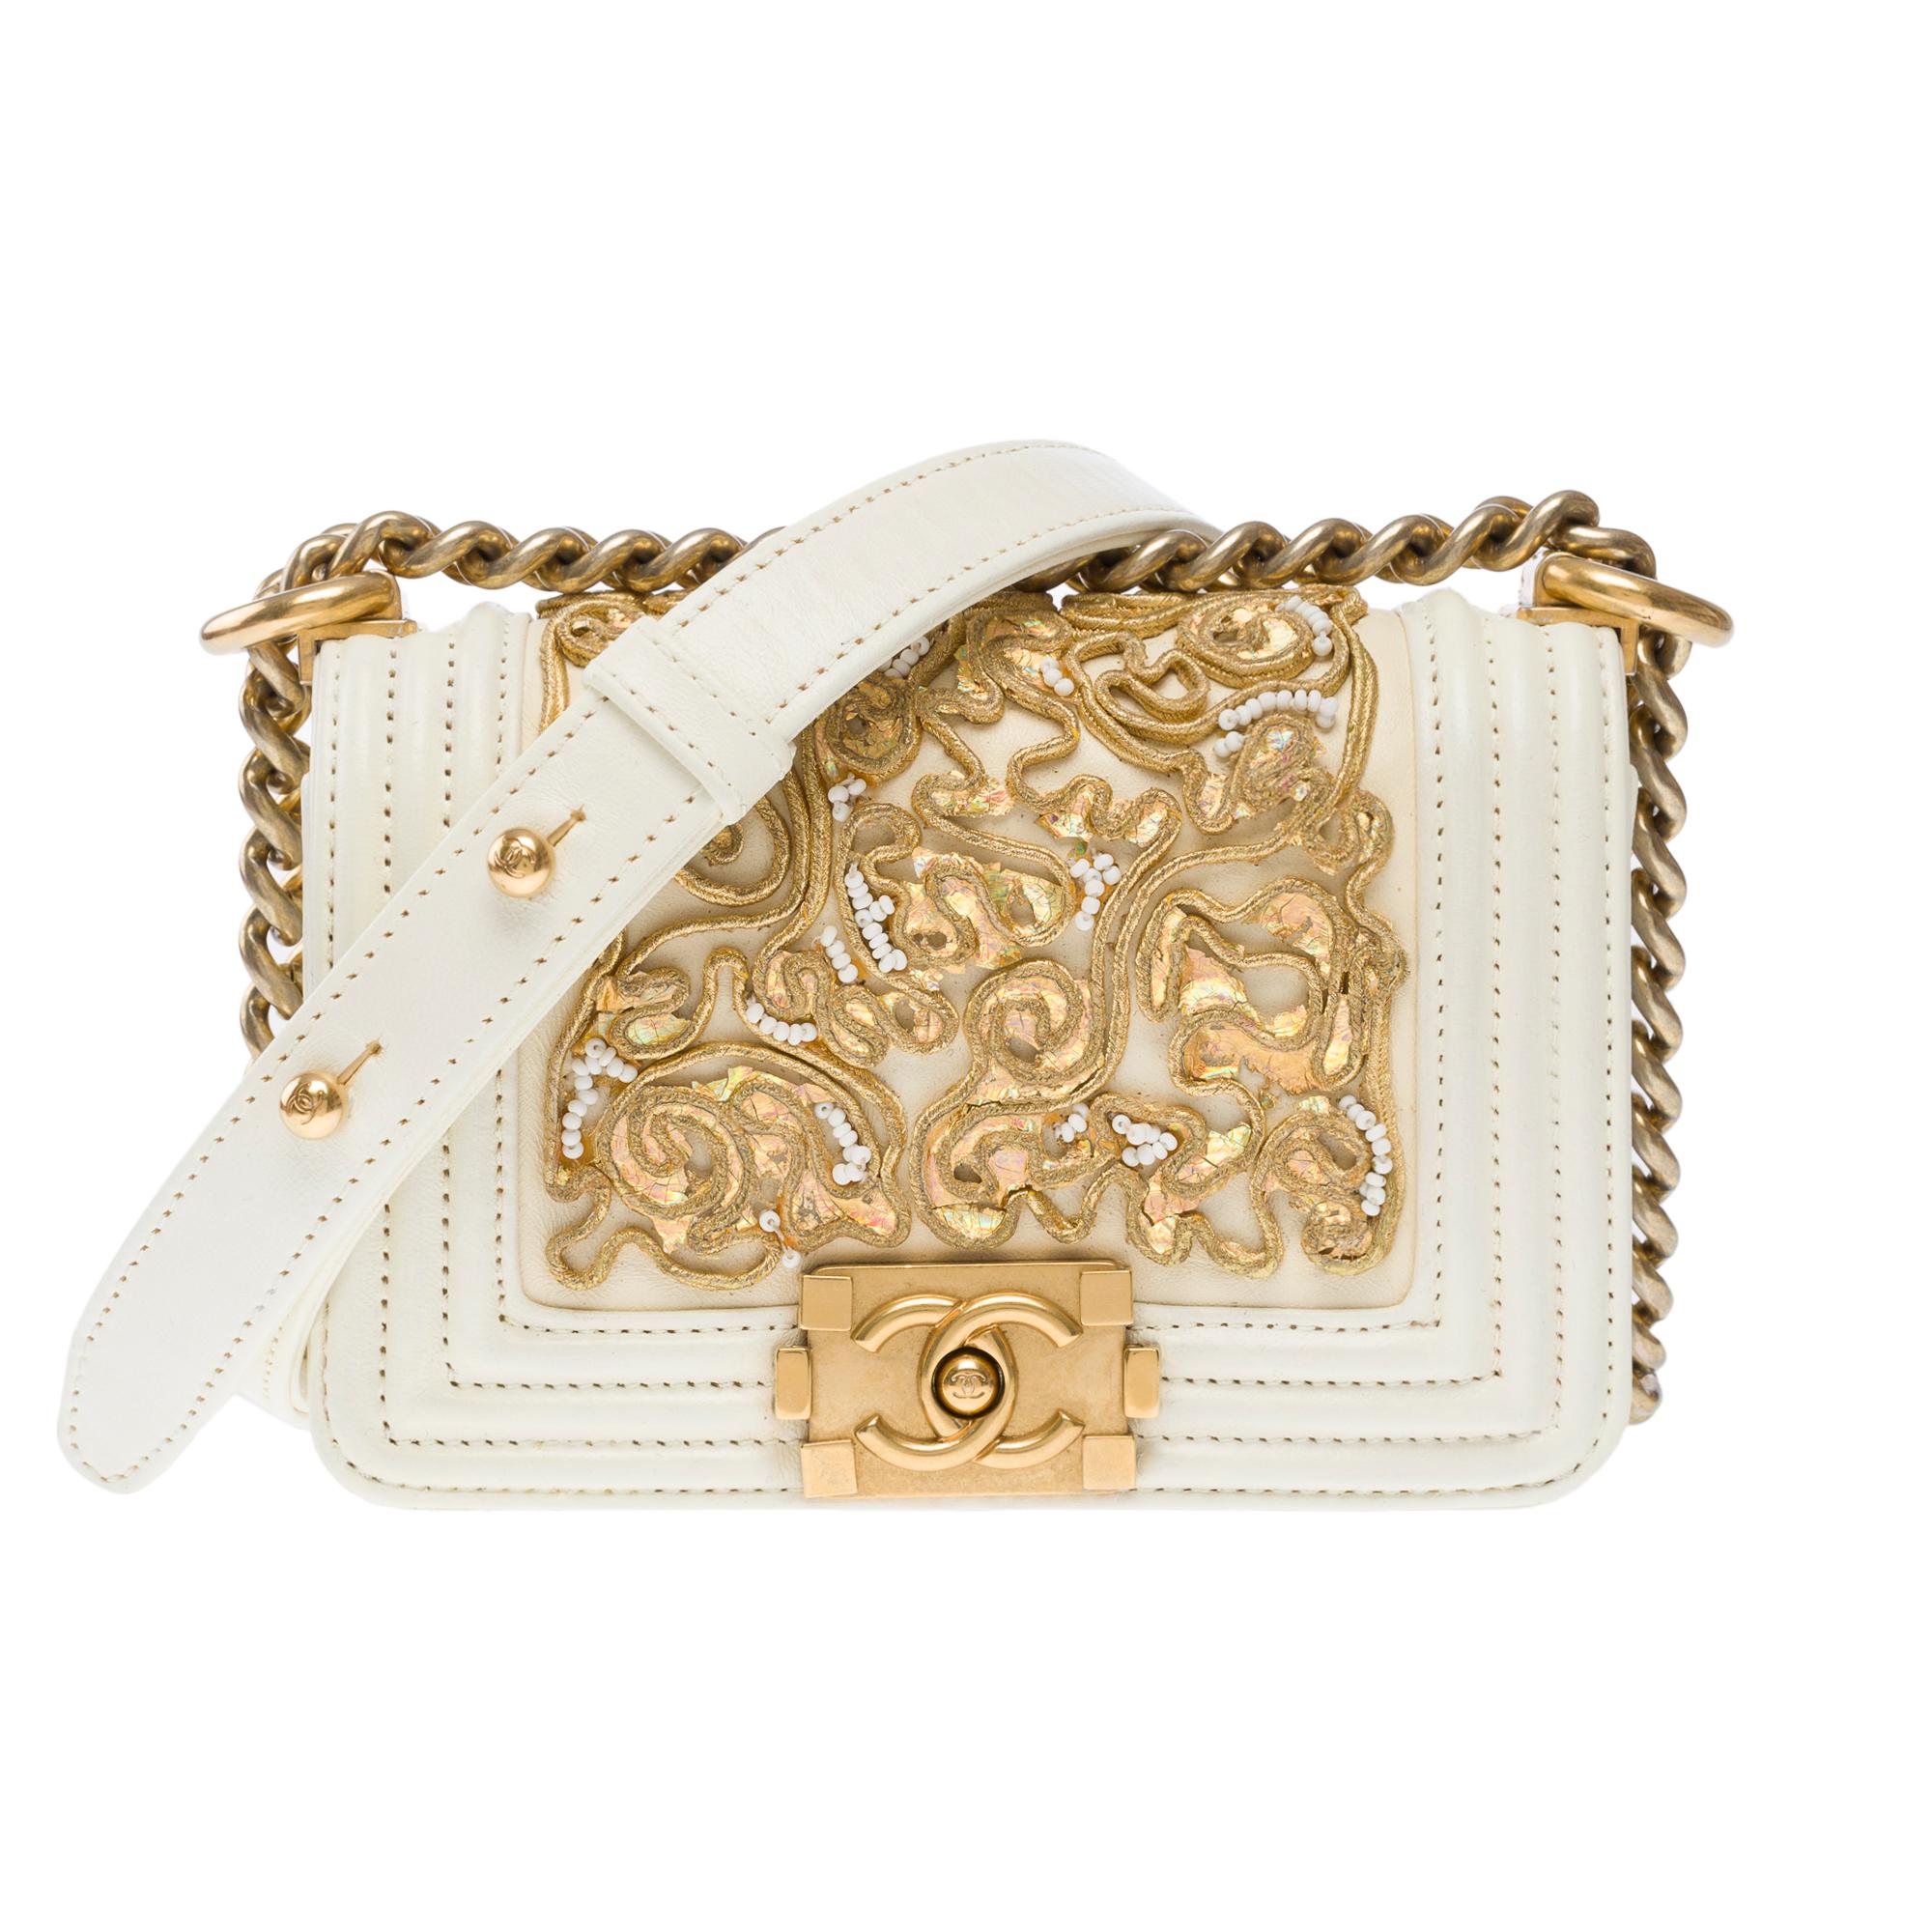 Prächtige und seltene Chanel Mini Boy Umhängetasche der Versailles Cruise Collection in limitierter Auflage aus ecrufarbenem Leder, verziert mit goldenen Stickereien und weißen Perlen, mattgoldenem Metallbesatz und einer verstellbaren Kette aus